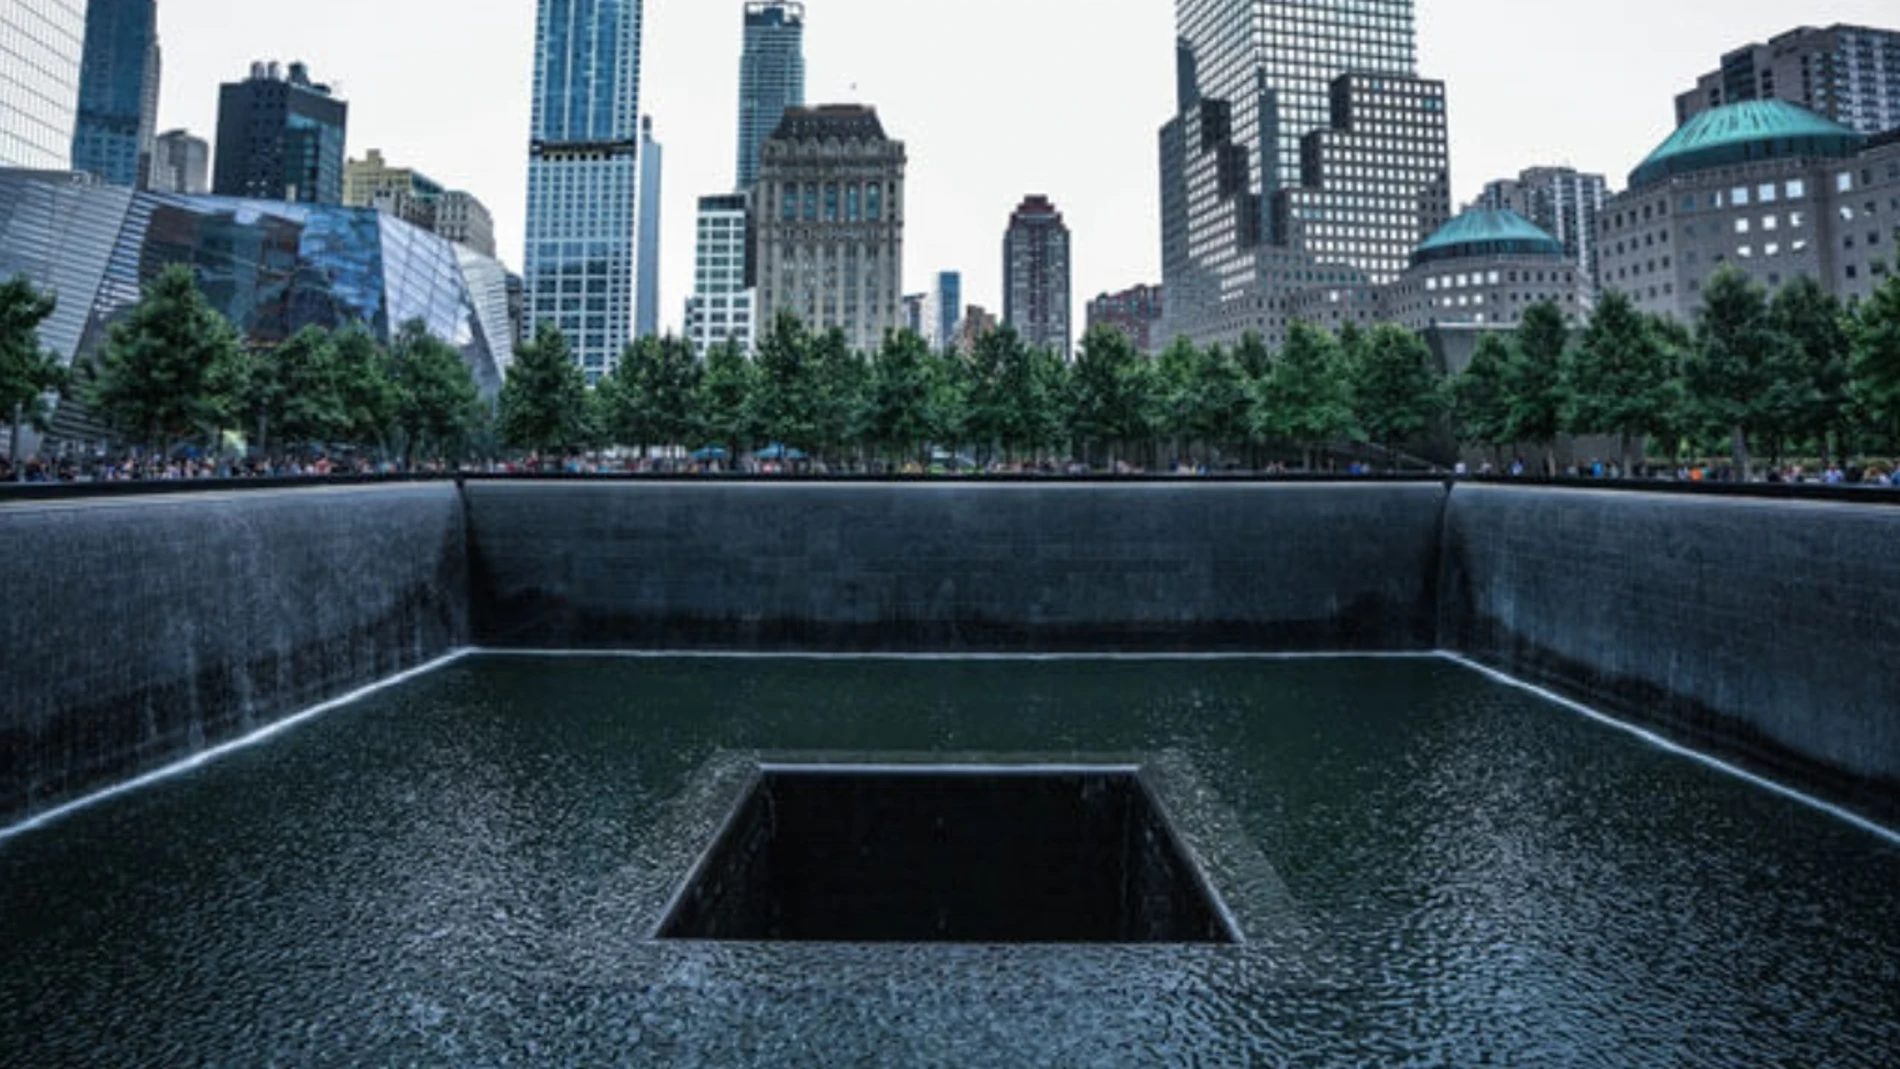 National September 11 Memorial New York 